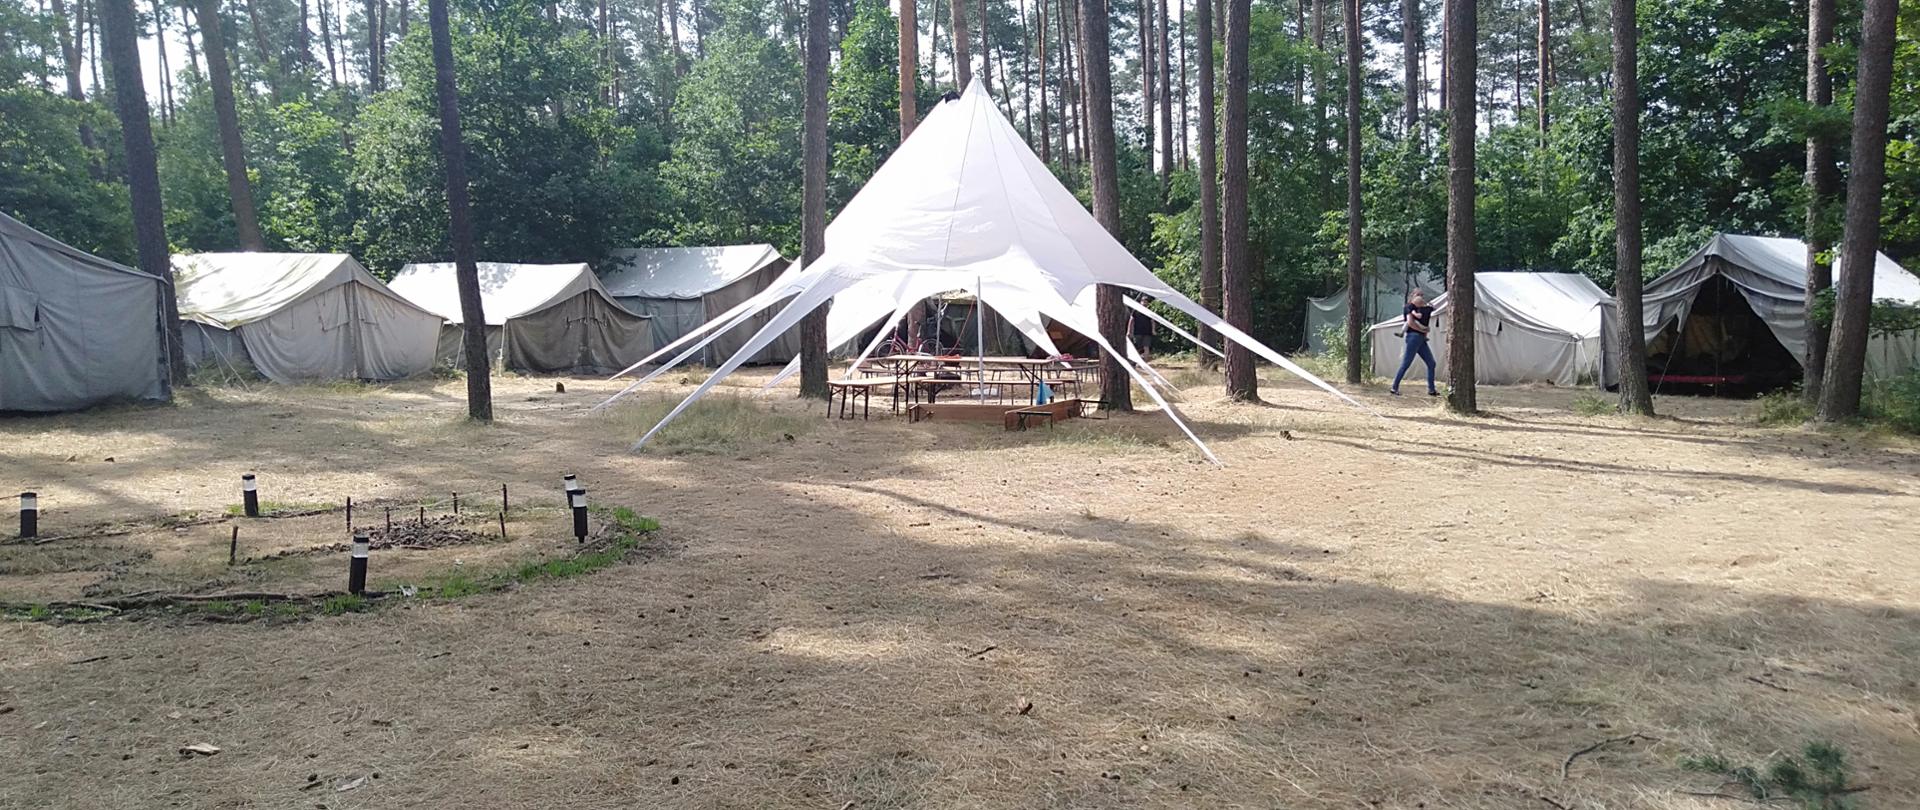 Na zdjęciu widoczne namioty harcerskie rozstawione w lesie.